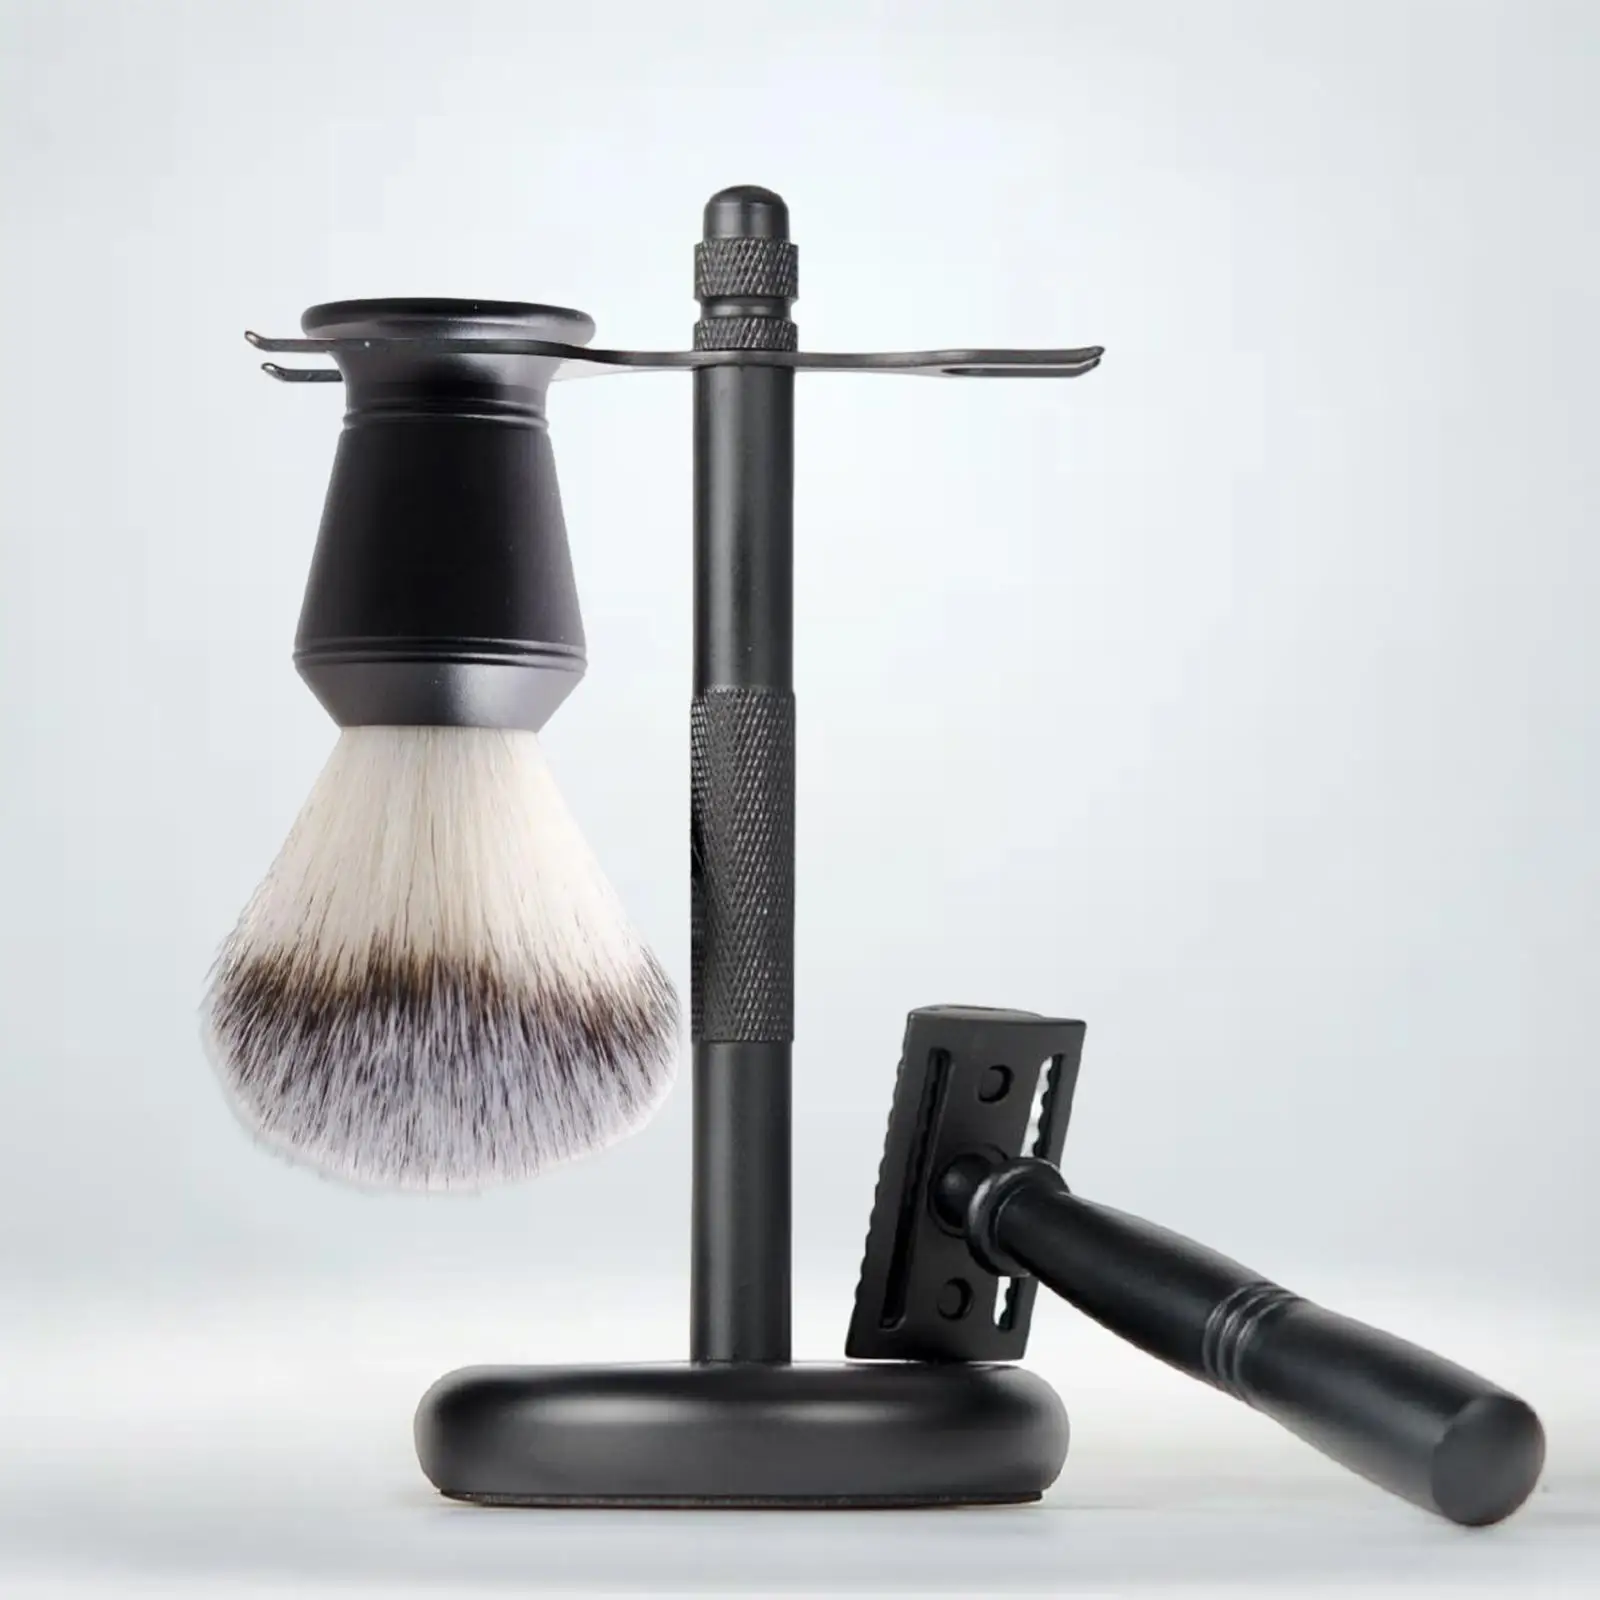 3 Pieces Shaving Kit Black Color Elegant Shaving Brush Shaving Stand Shaving Brush Set Razor+ Stand Holder + Shaving Brush